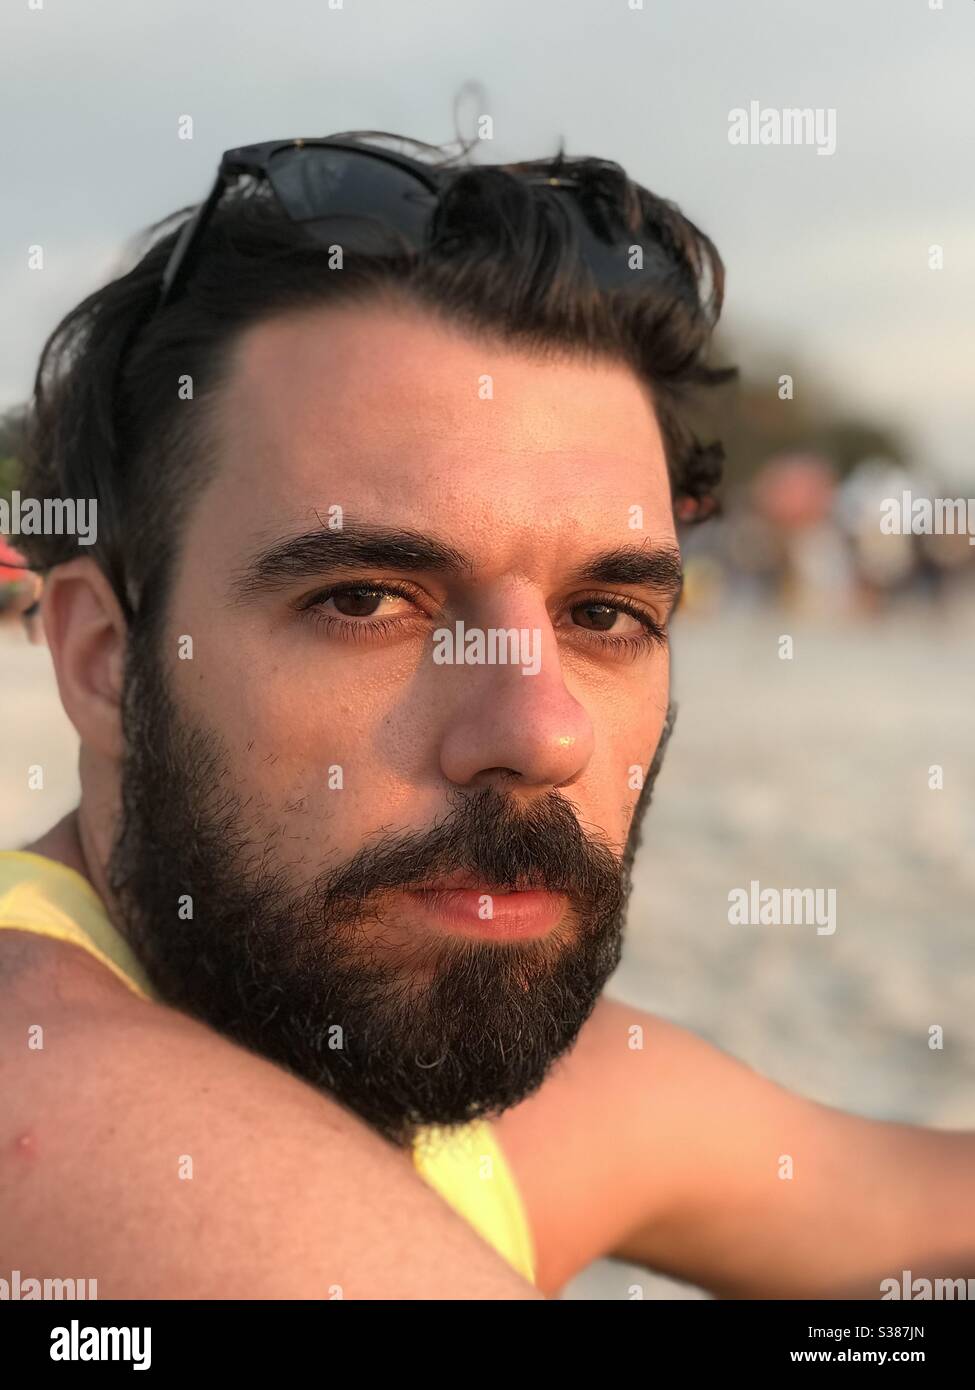 A man on the beach Stock Photo